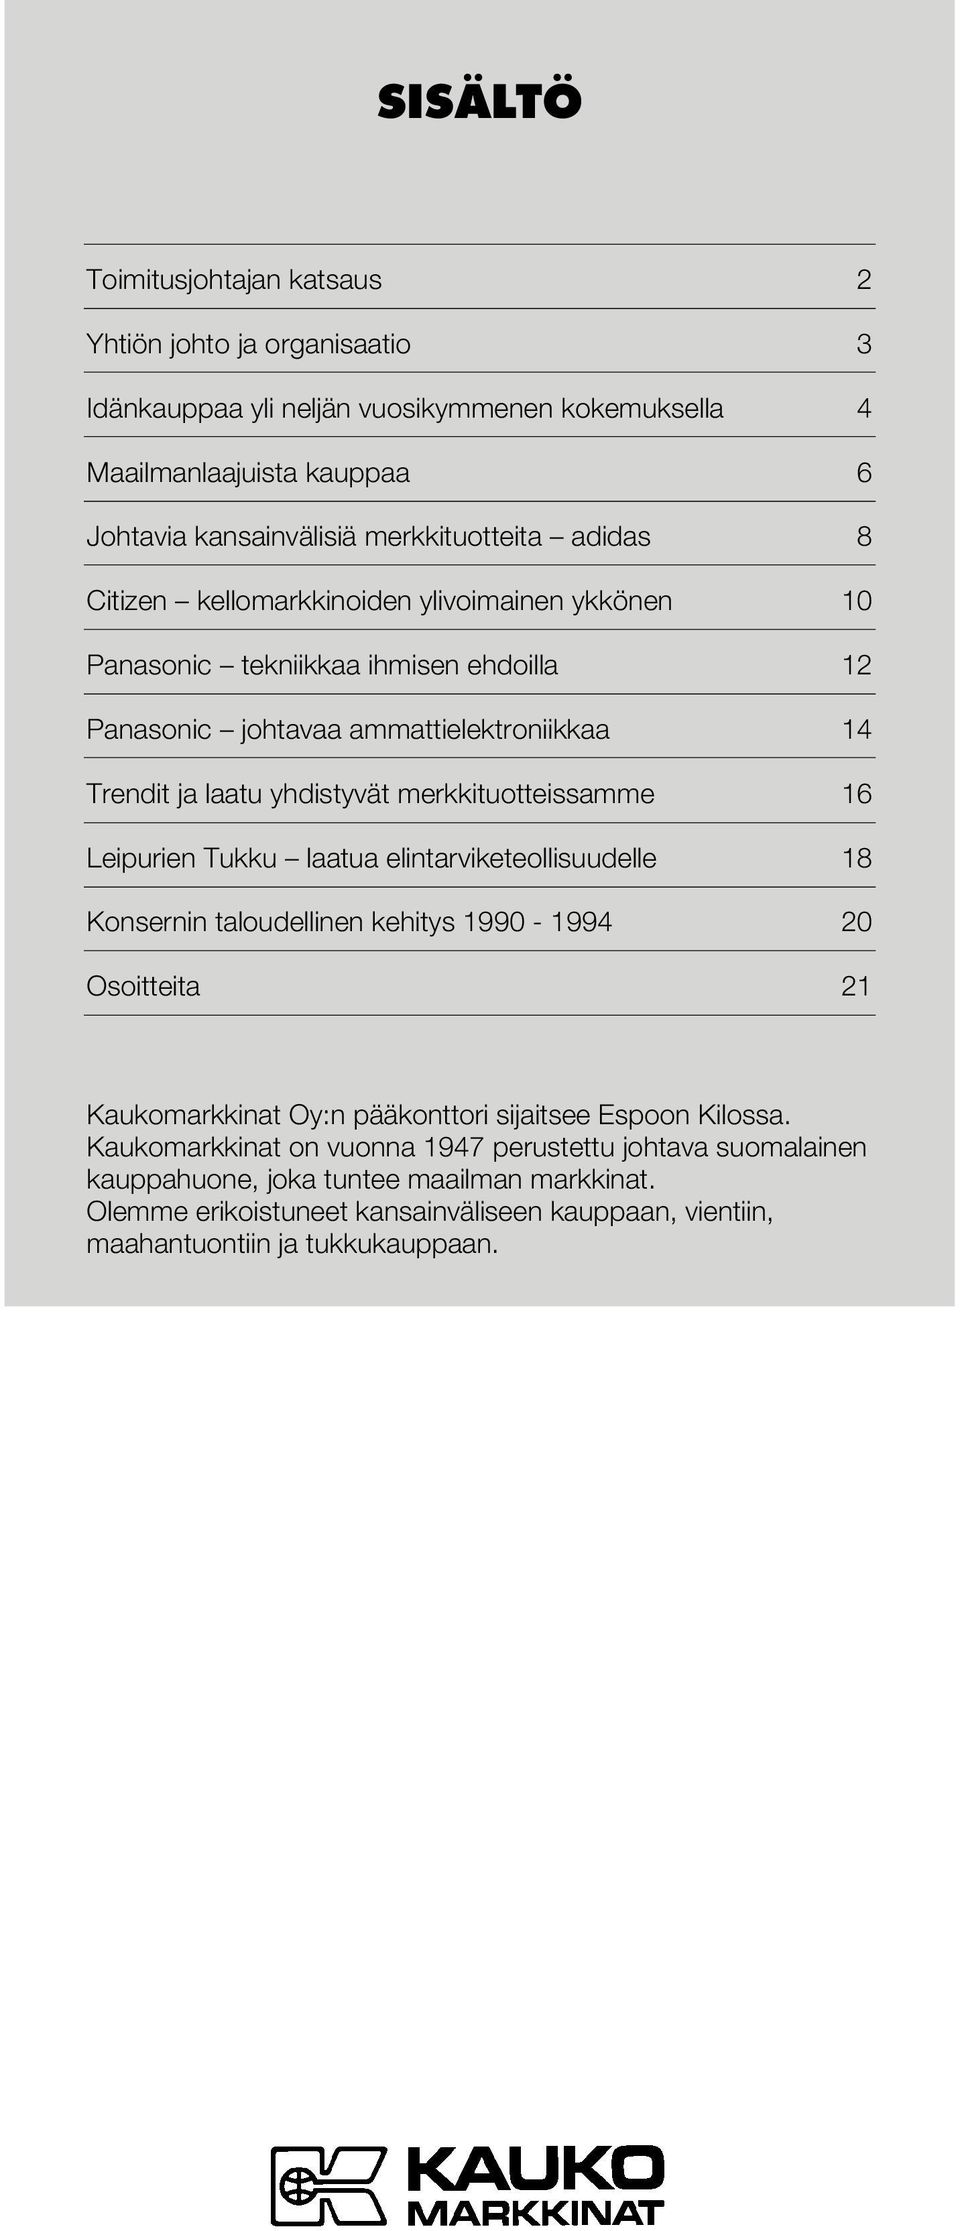 merkkituotteissamme 16 Leipurien Tukku laatua elintarviketeollisuudelle 18 Konsernin taloudellinen kehitys 1990-1994 20 Osoitteita 21 Kaukomarkkinat Oy:n pääkonttori sijaitsee Espoon